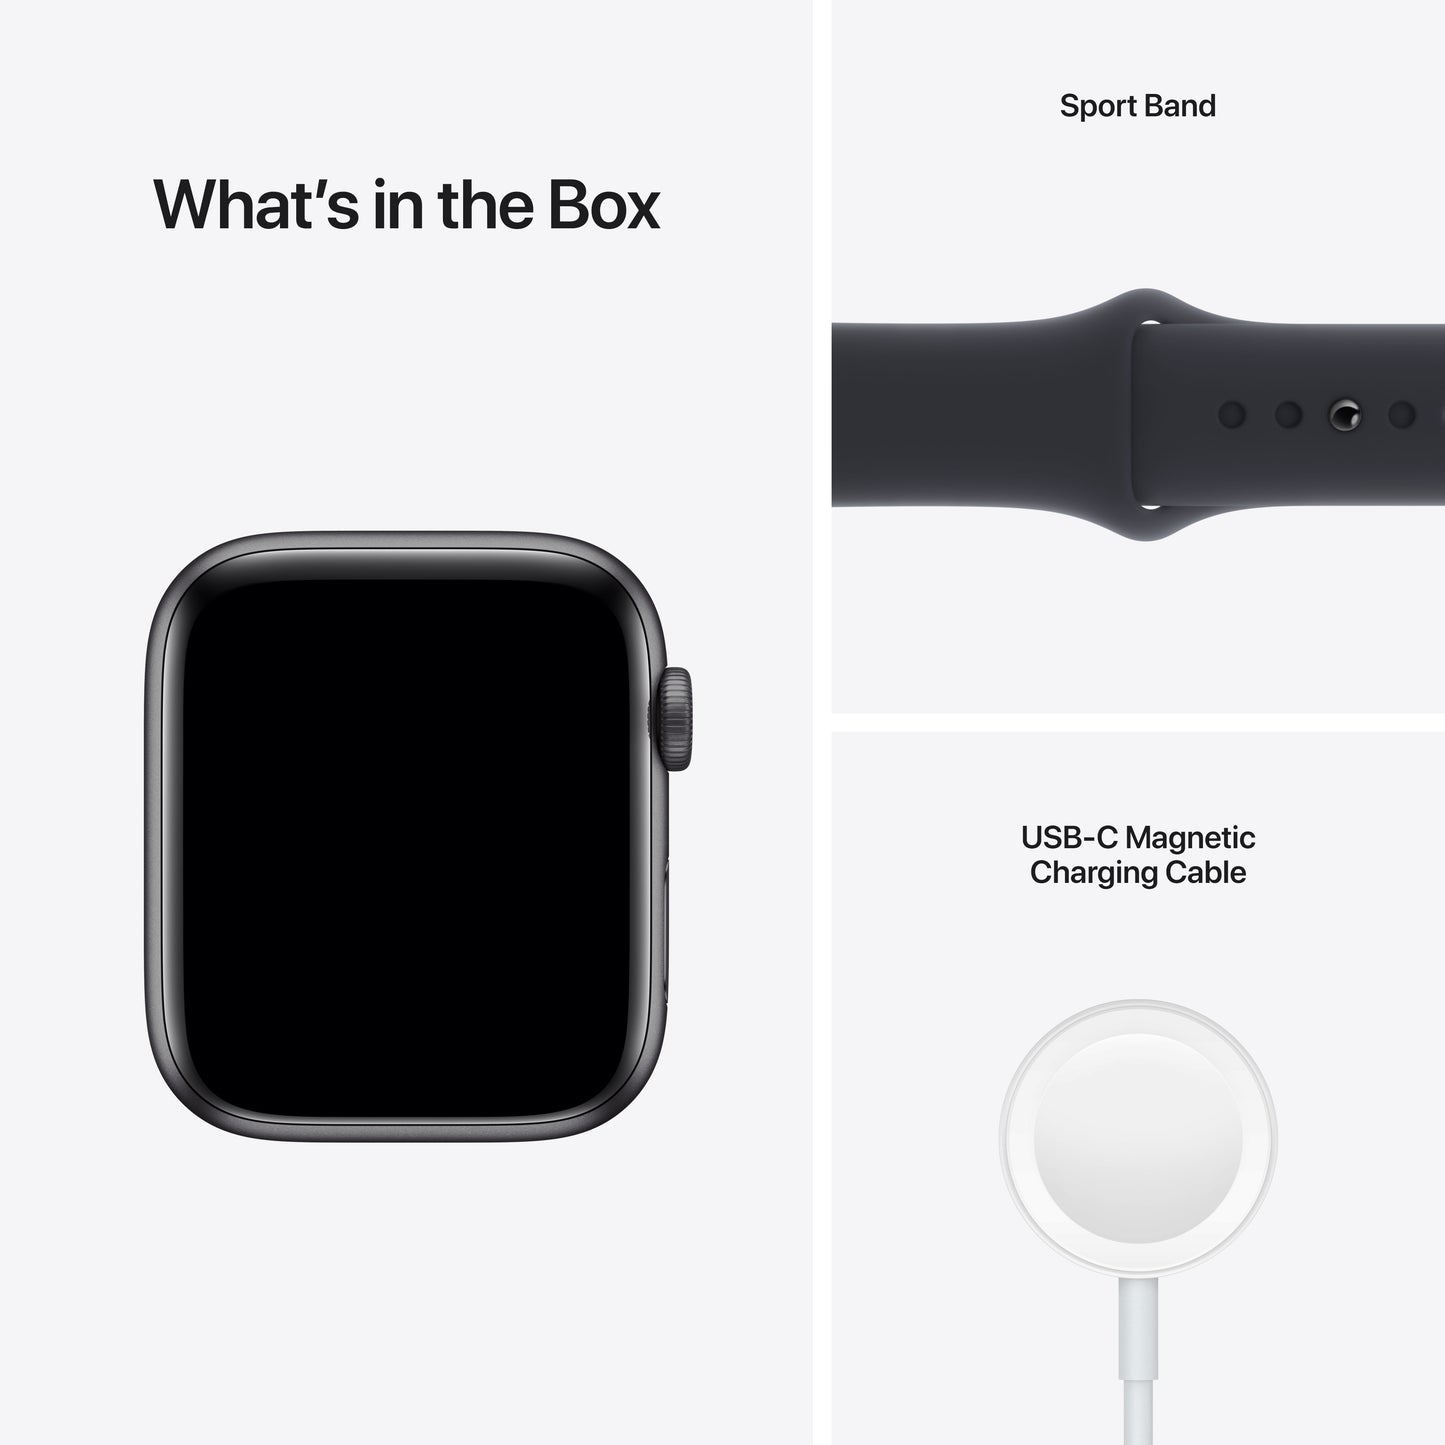 Apple Watch SE (GPS) - Caja de aluminio en gris espacial de 44 mm - Correa deportiva en color medianoche - Talla única